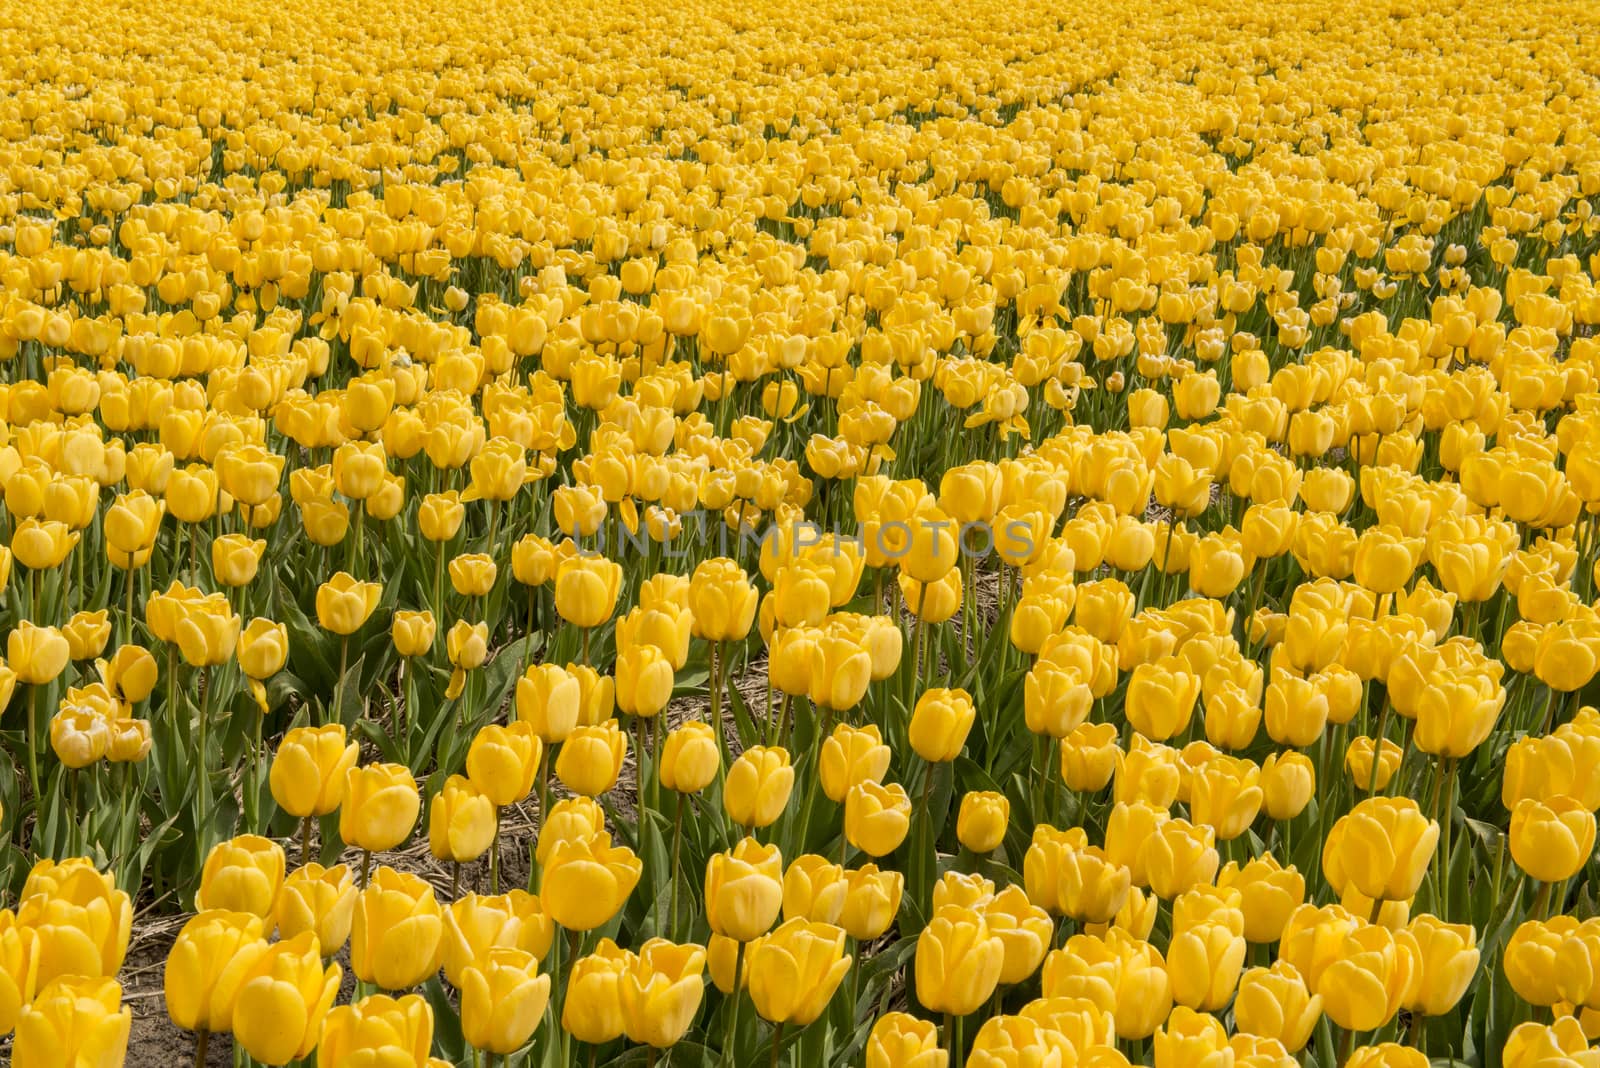 Yellow tulips in the Noordoostpolder in the Netherlands